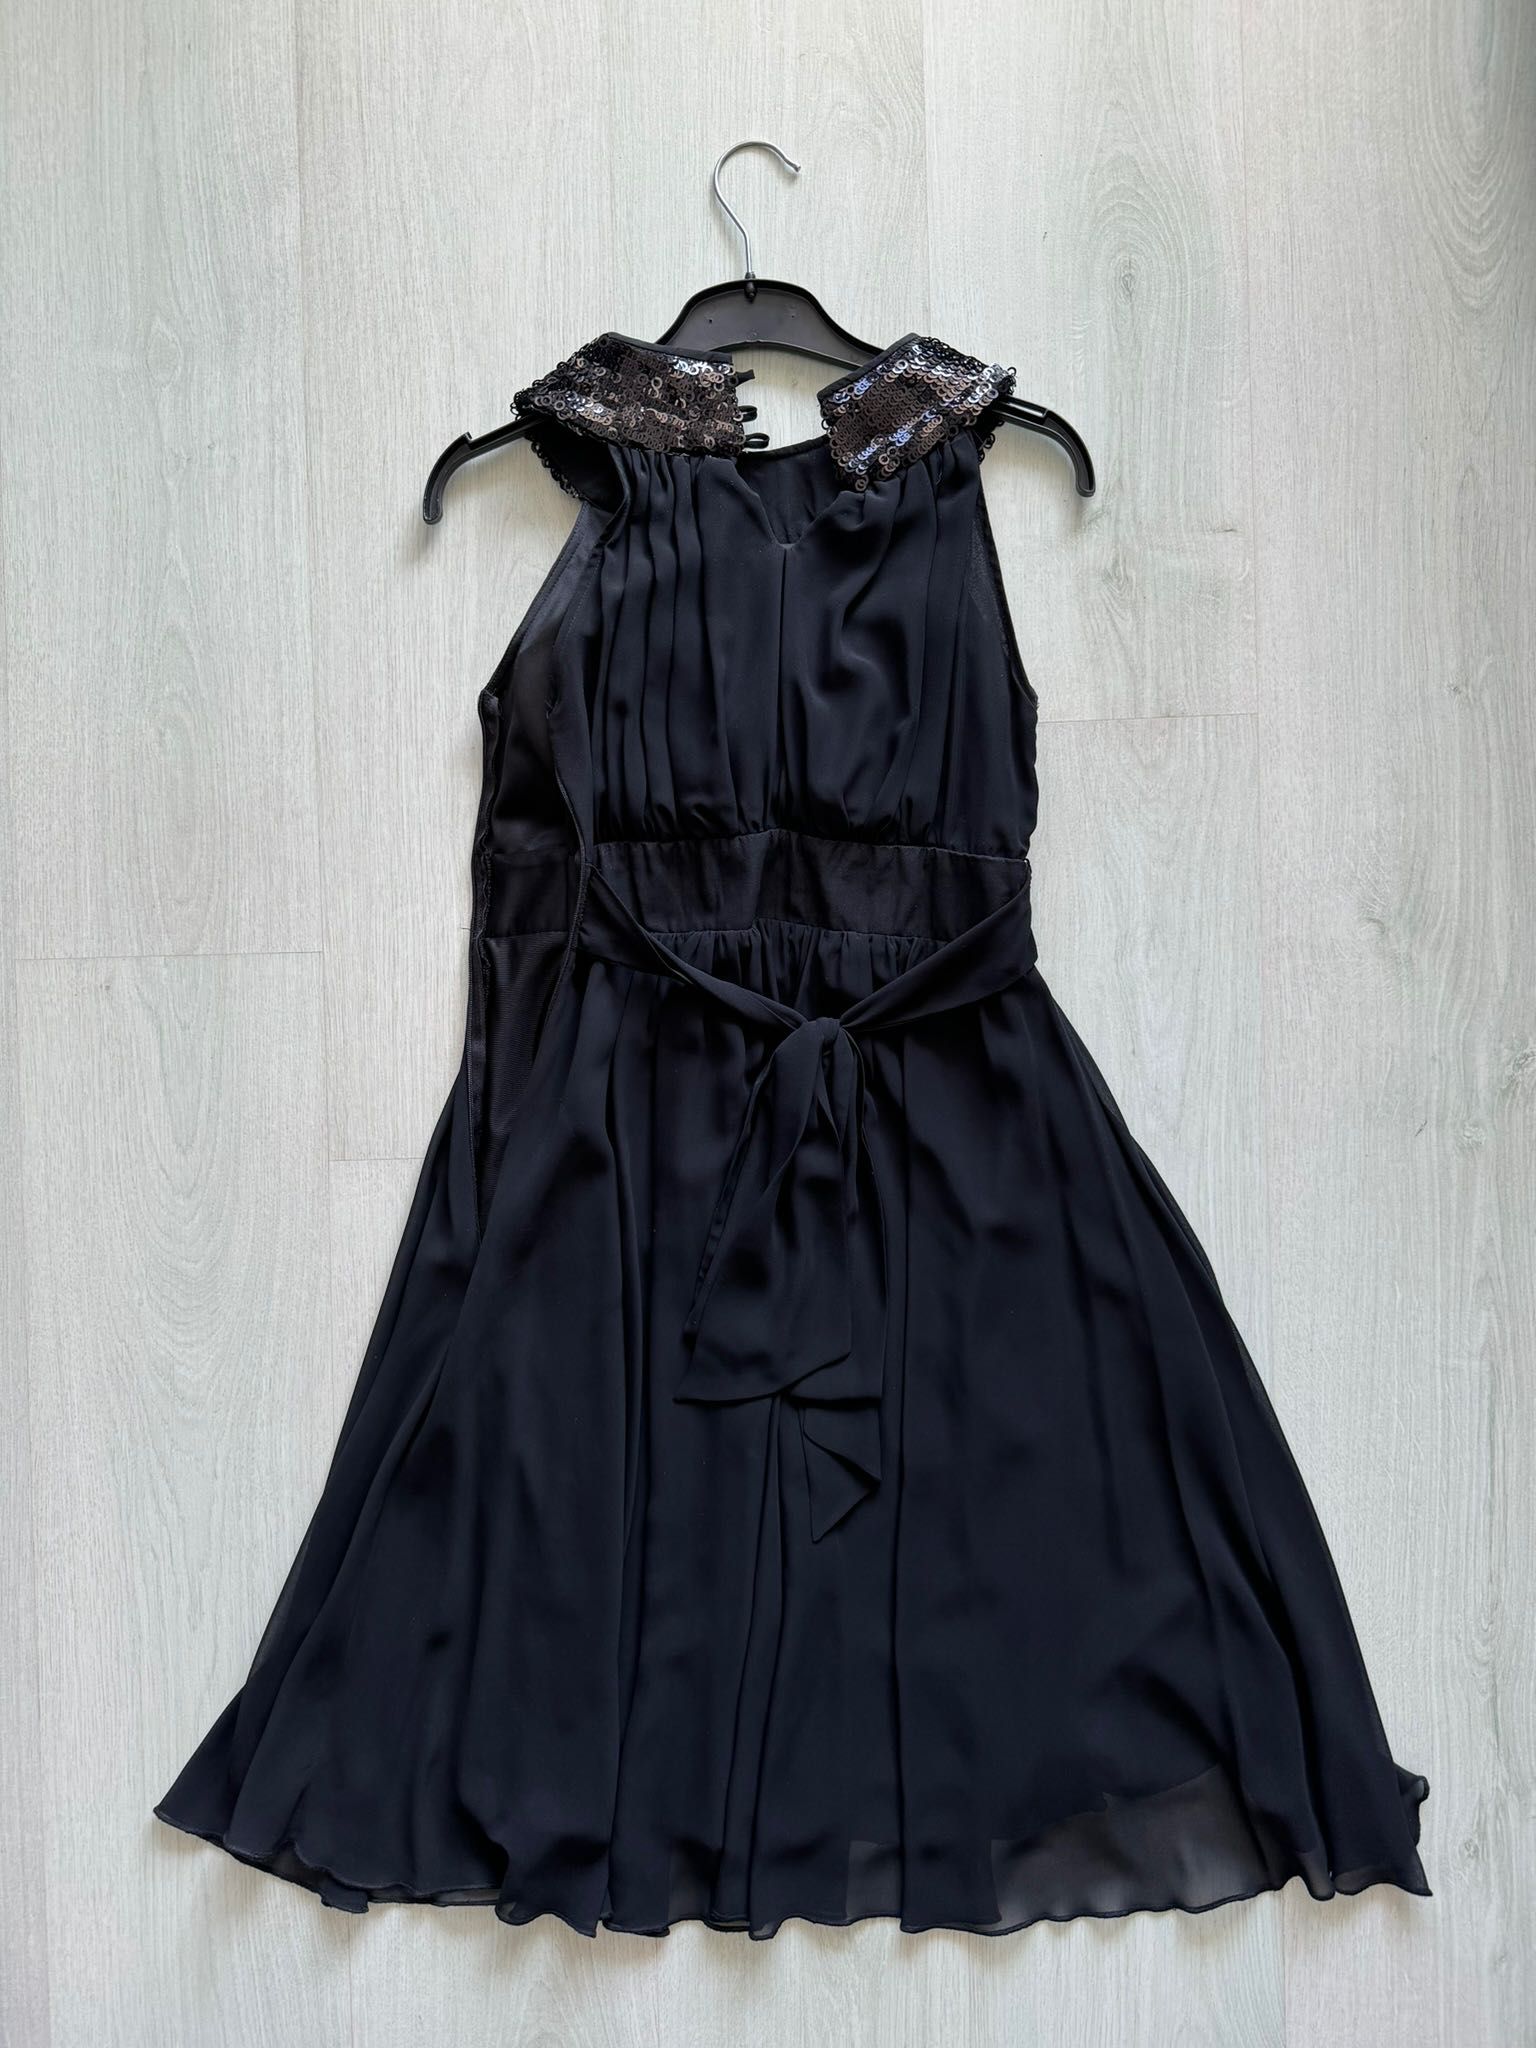 Rochie eleganta La Donna, mărimea 36, neagră